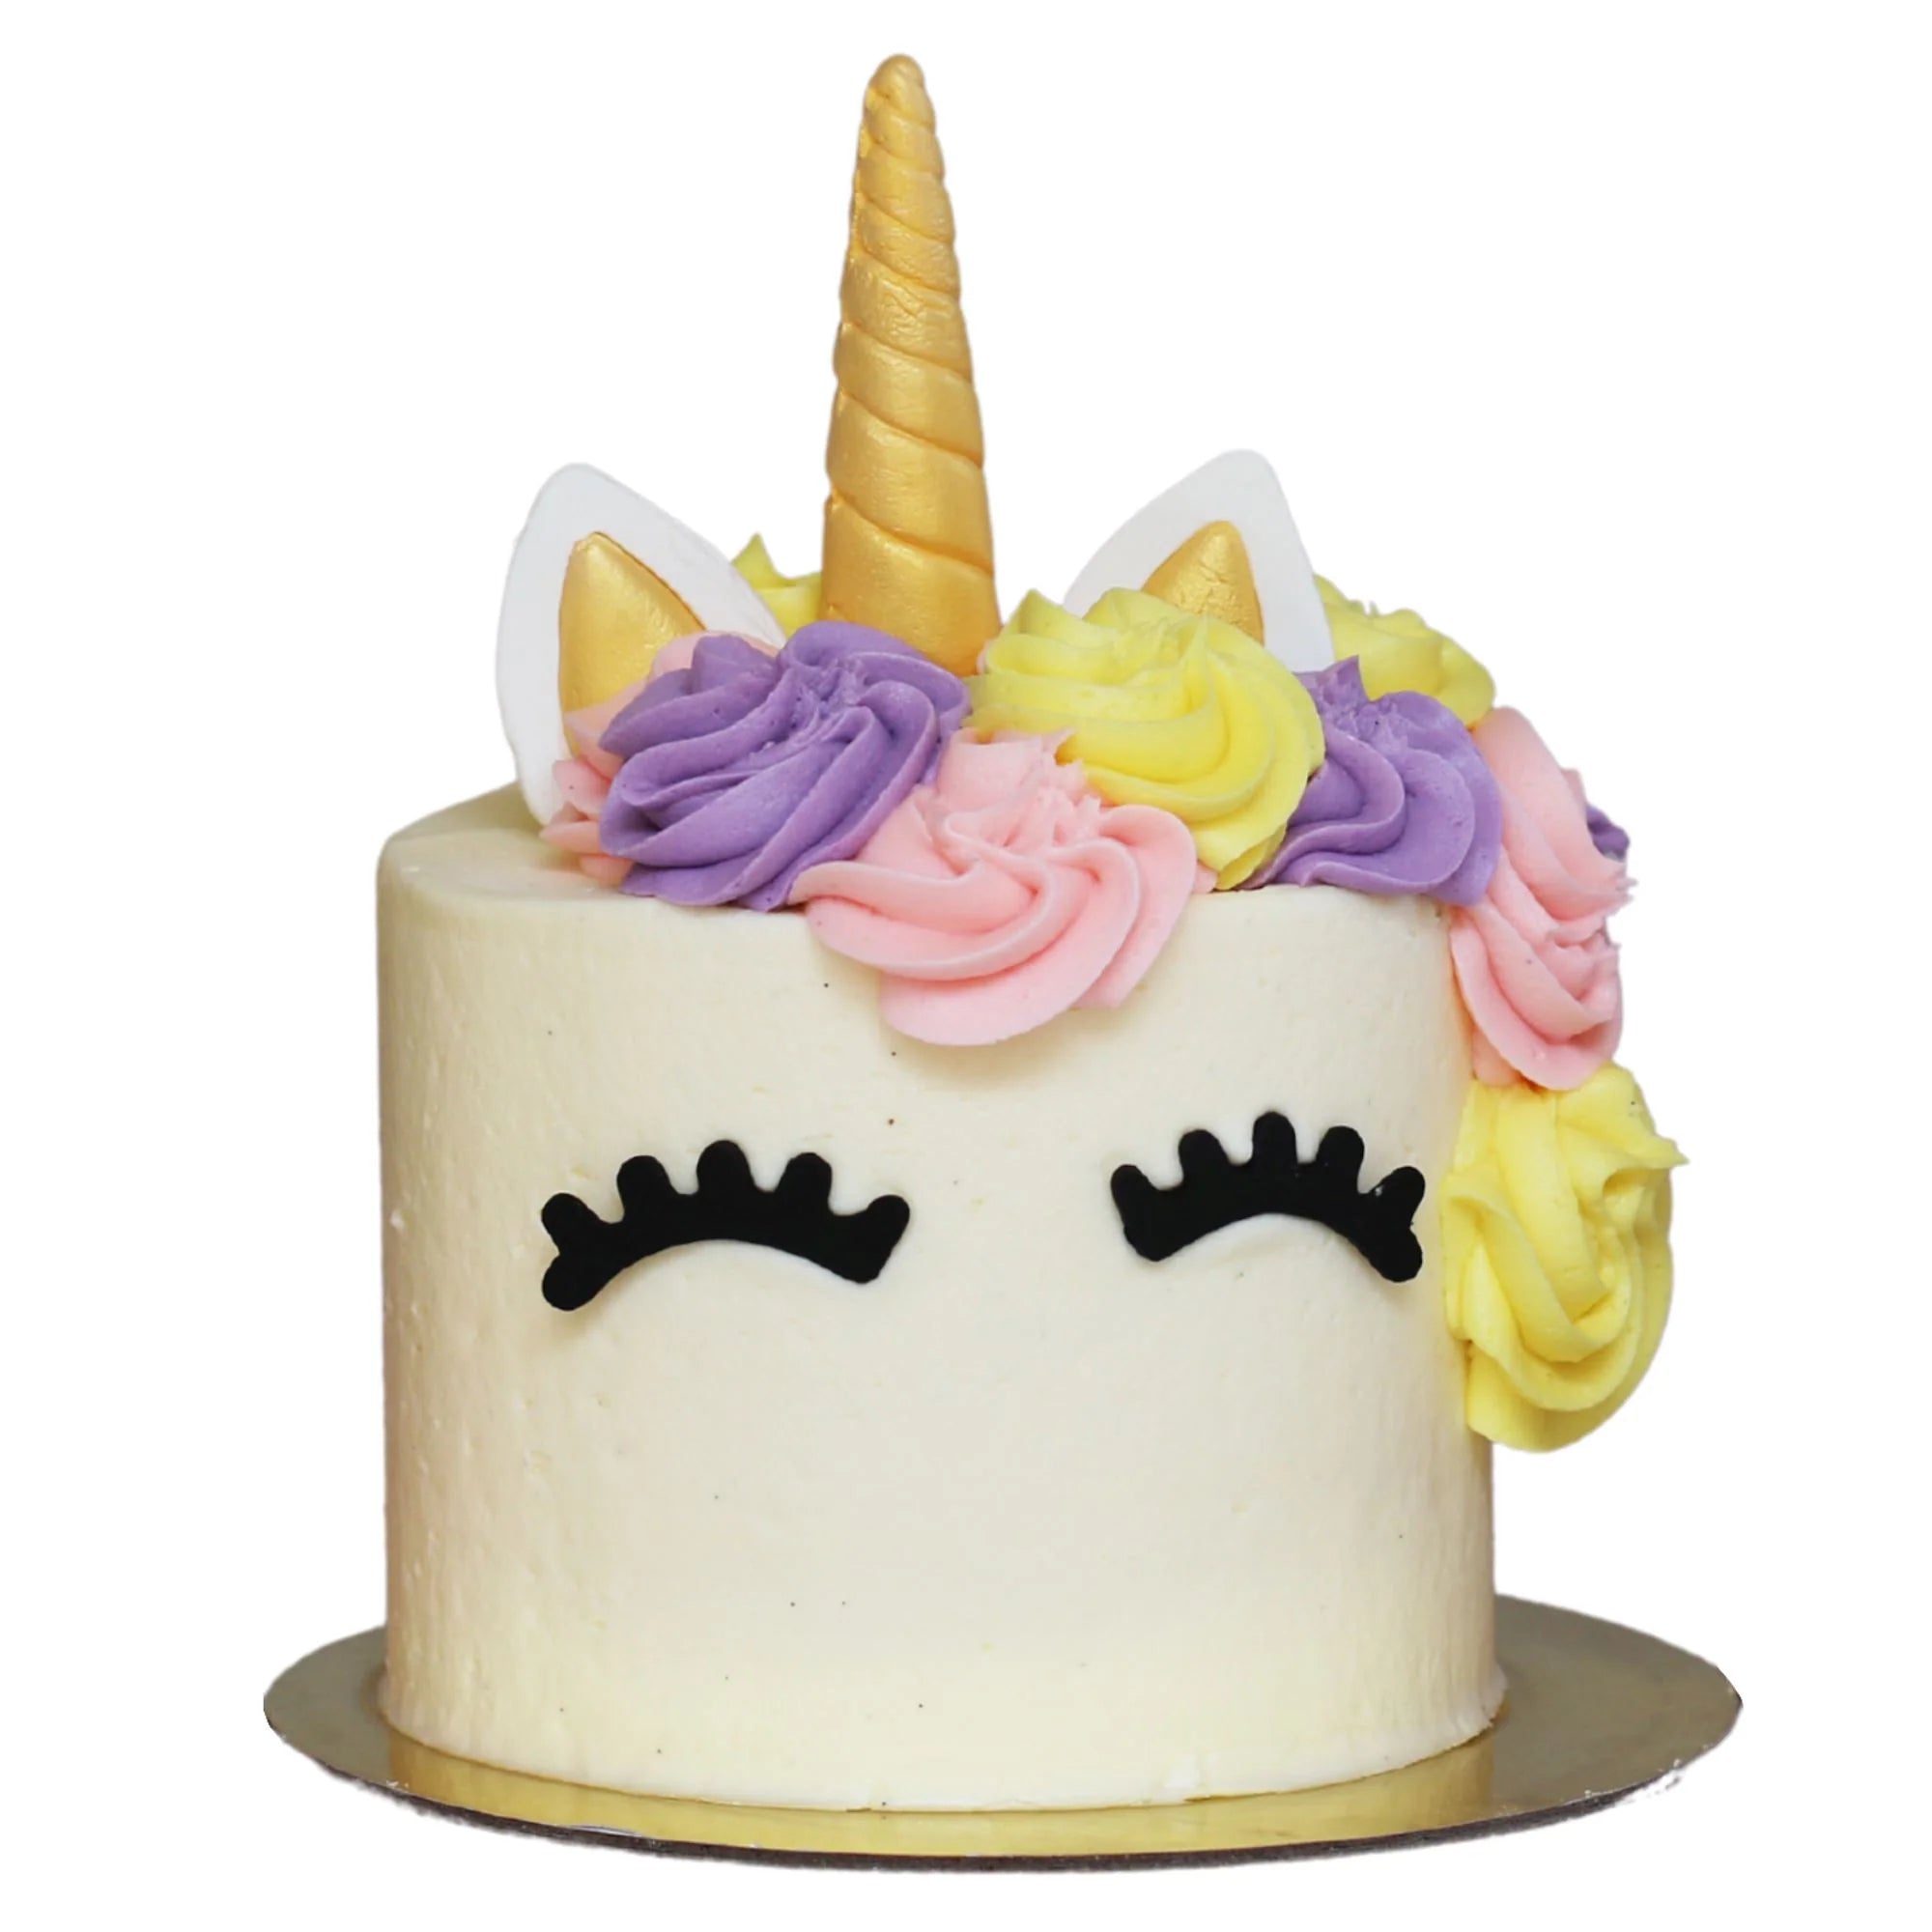 The Unicorn Cake - Original Cakes The Cupcake Queens 